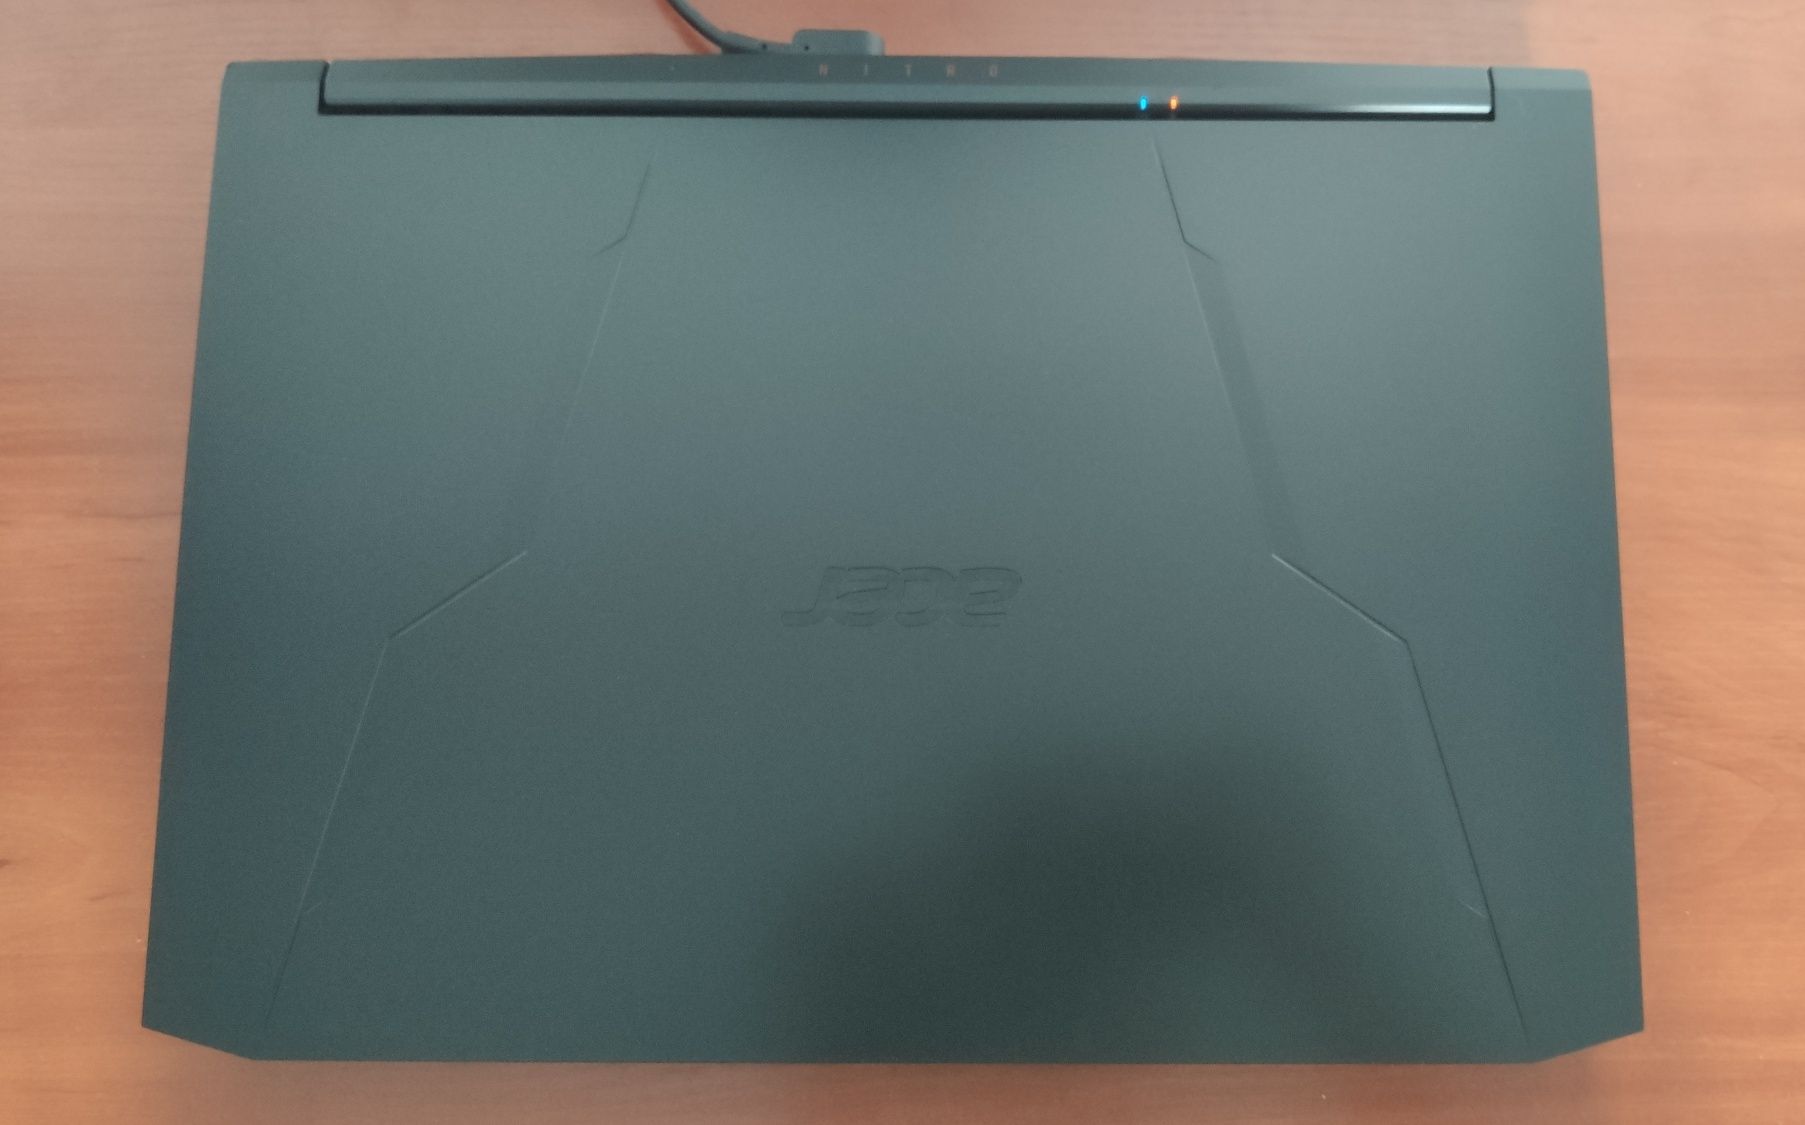 Acer Nitro 5 i5-11400h 16gb rtx 3060 ssd 512